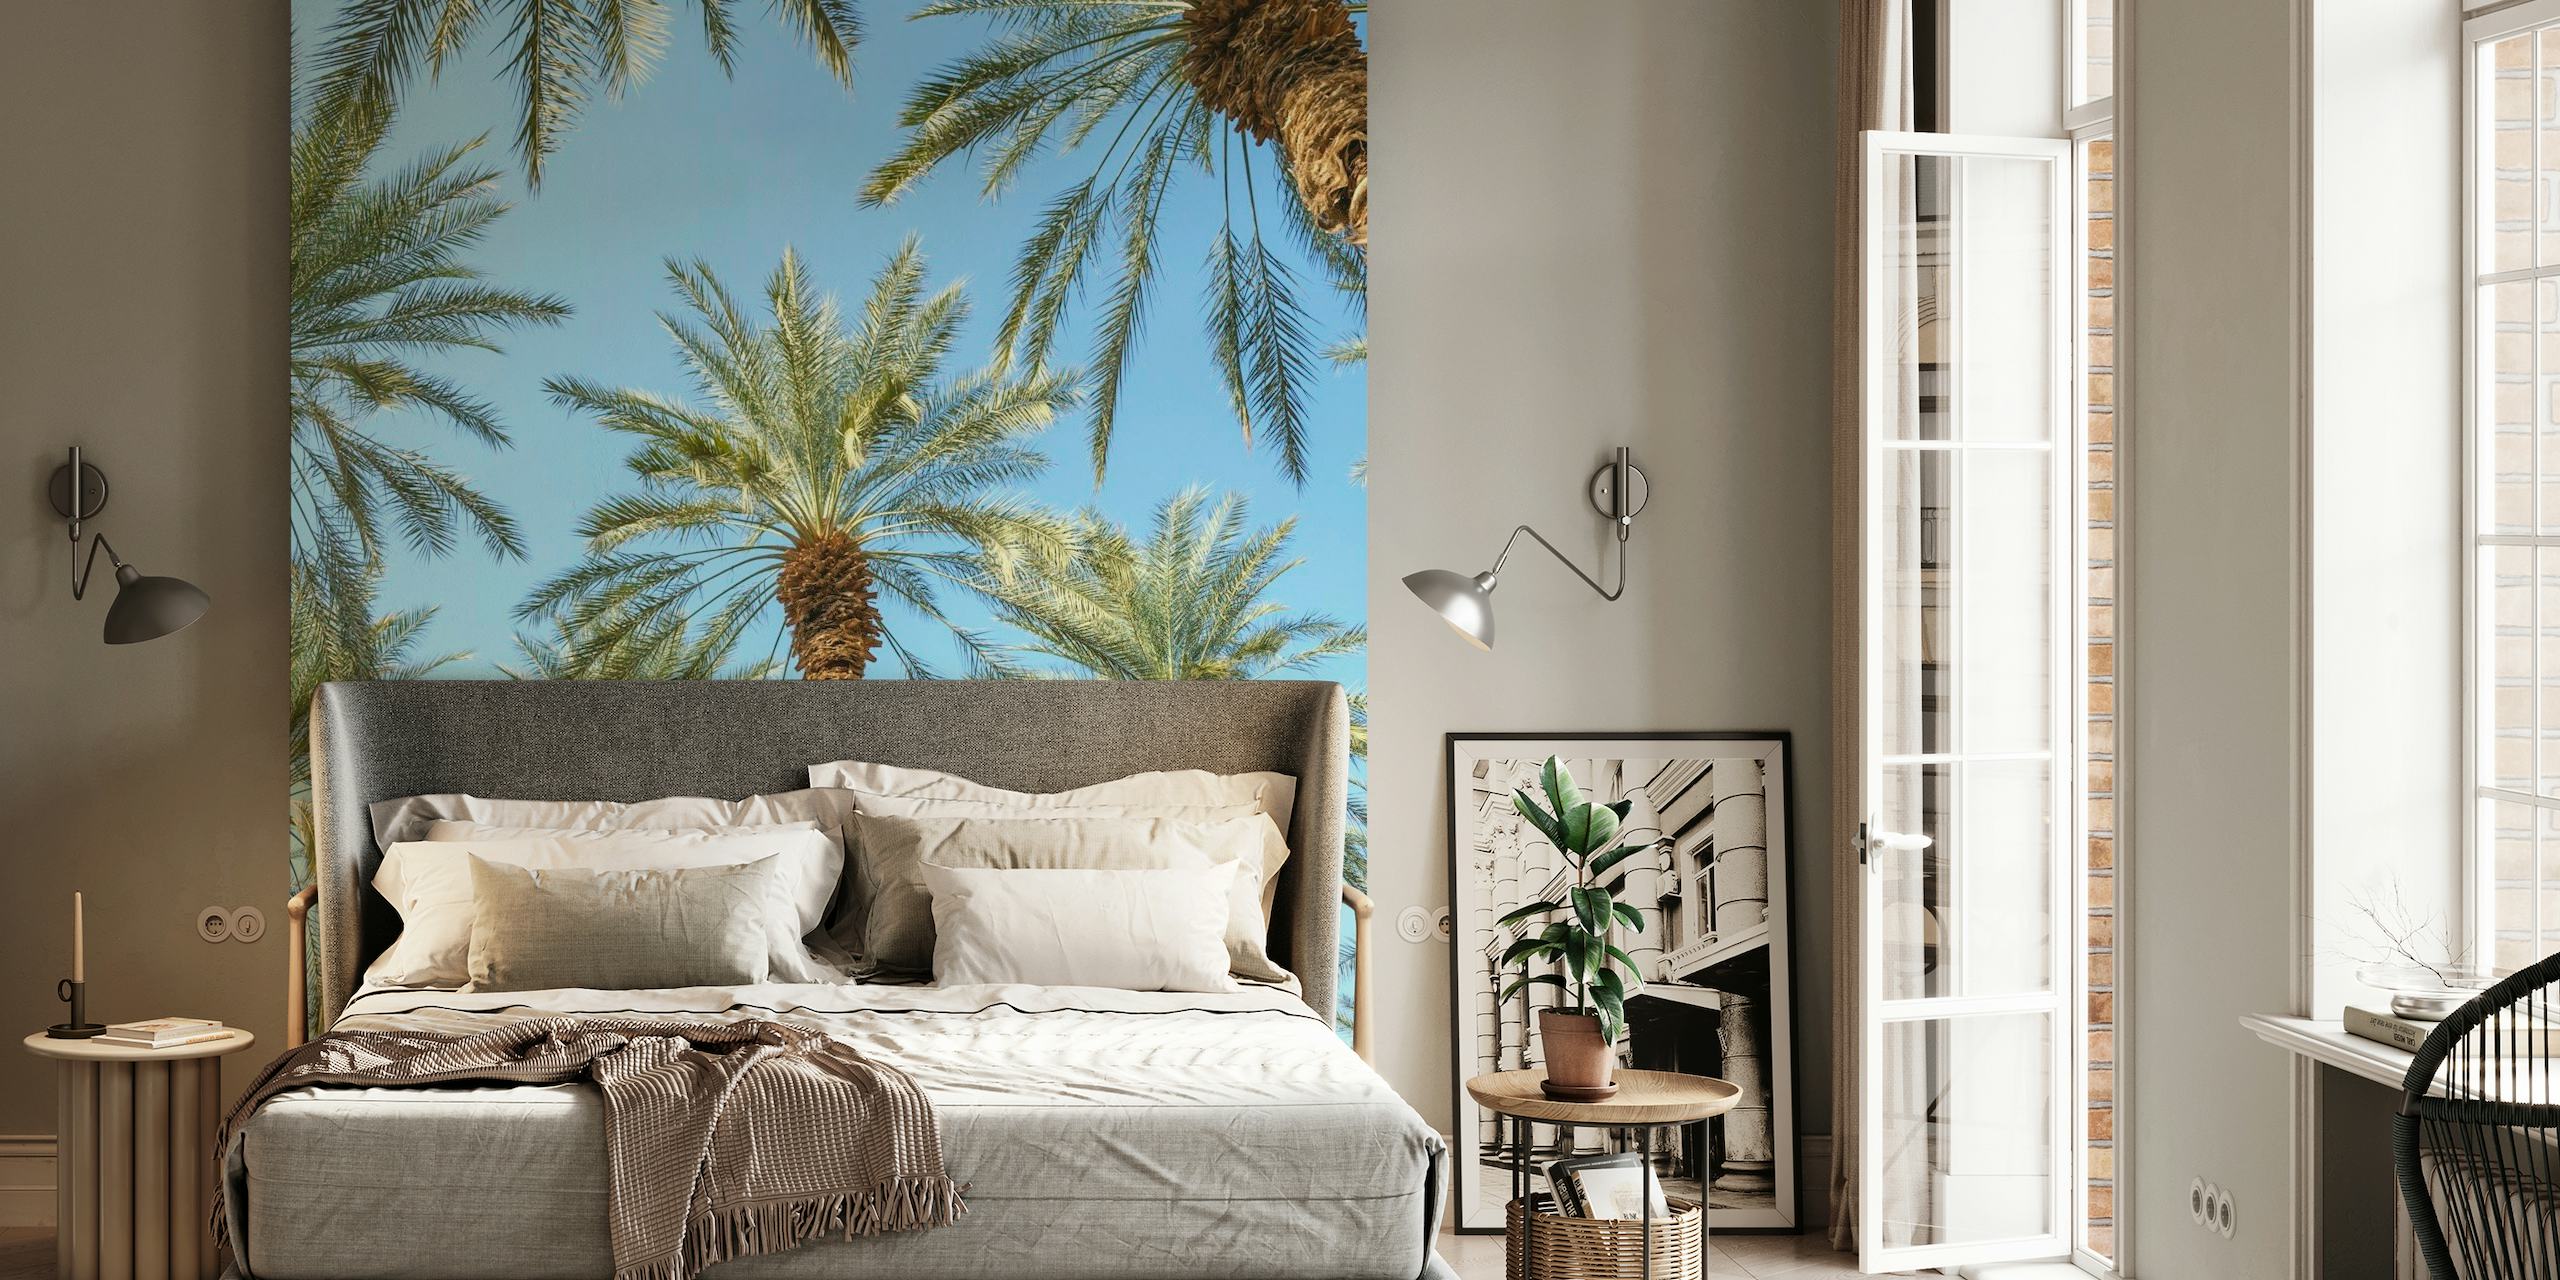 Fototapeta z tropikalnymi palmami zapewniająca spokojną atmosferę wystroju domu.